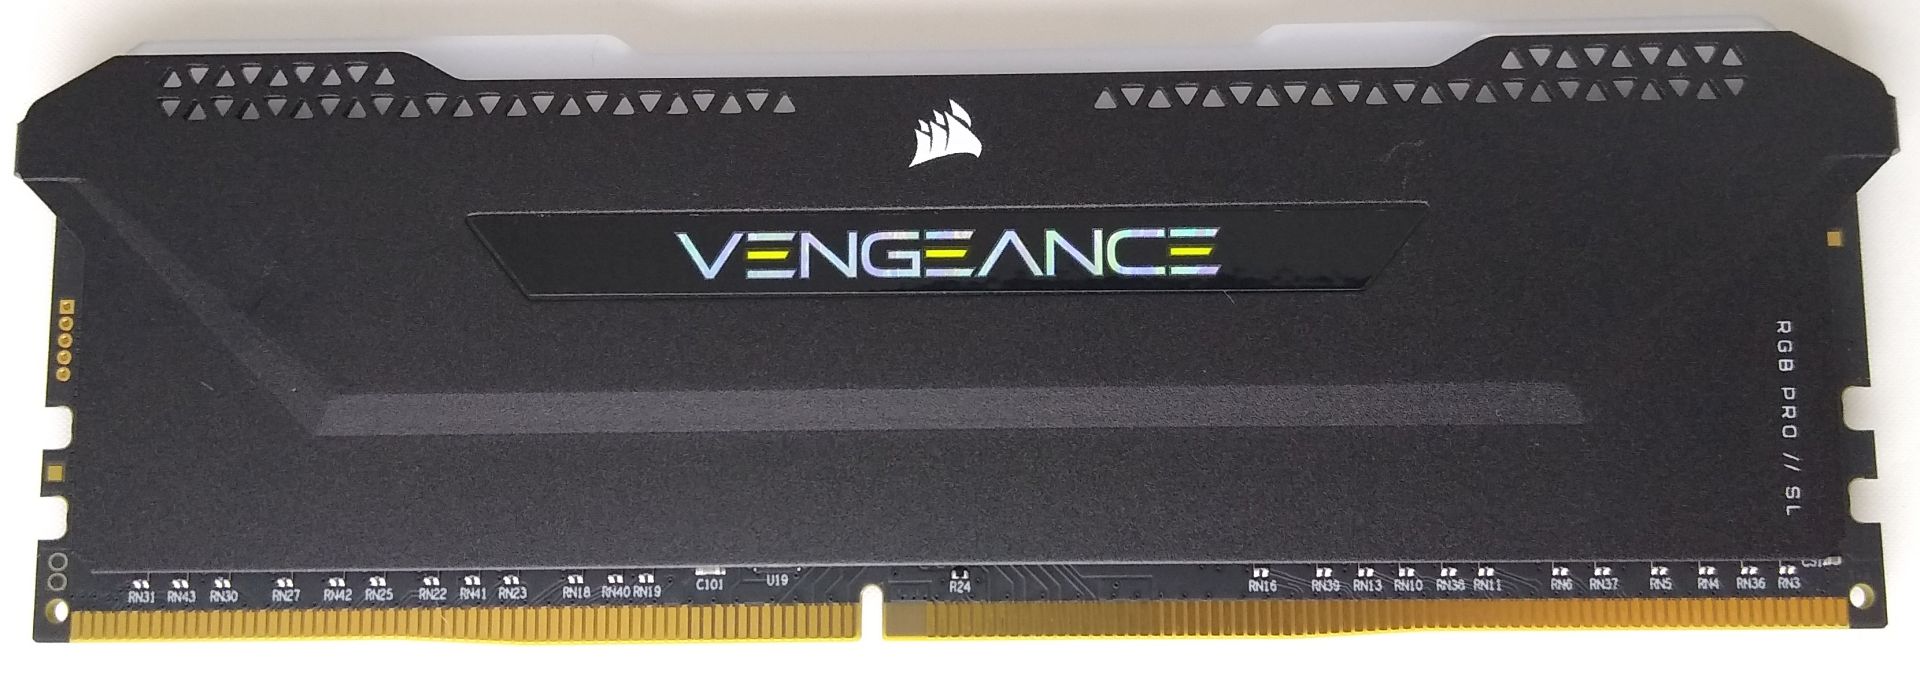 Corsair Vengeance RGB Pro SL DDR4 Review